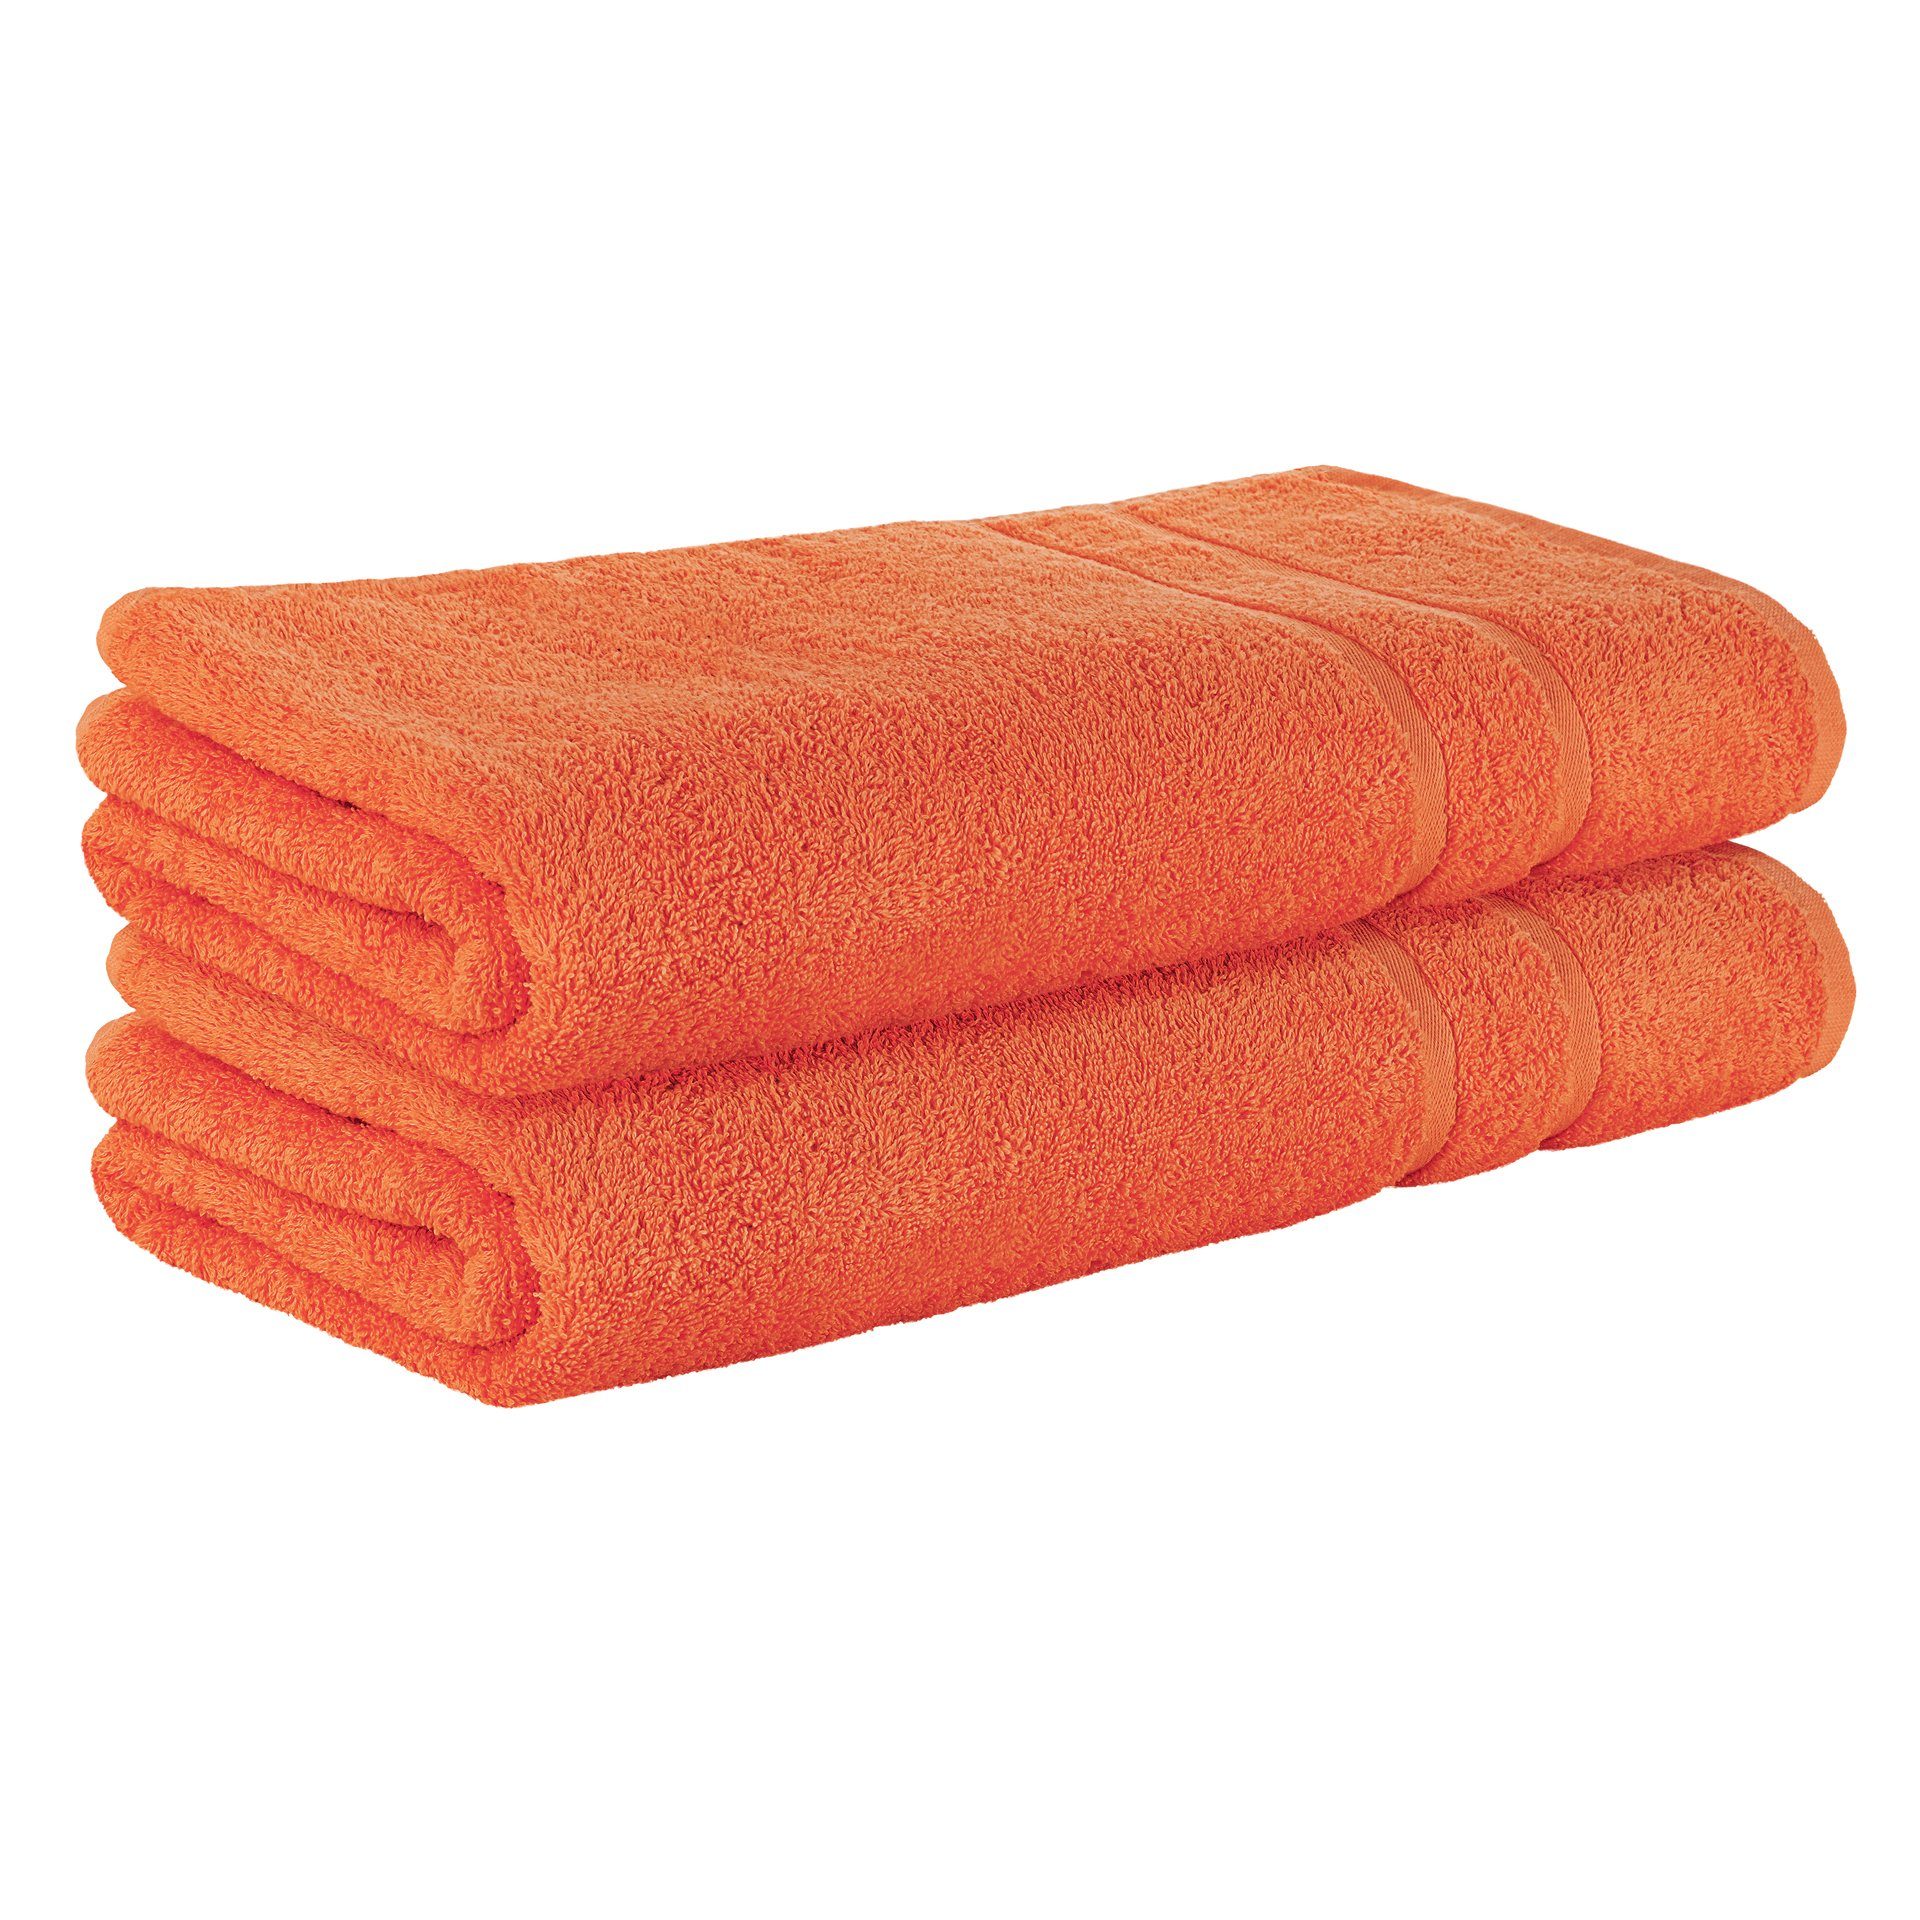 StickandShine Handtuch 2er Set Premium Frottee Handtuch 50x100 cm in 500g/m² aus 100% Baumwolle (2 Stück), 100% Baumwolle 500GSM Frottee Orange